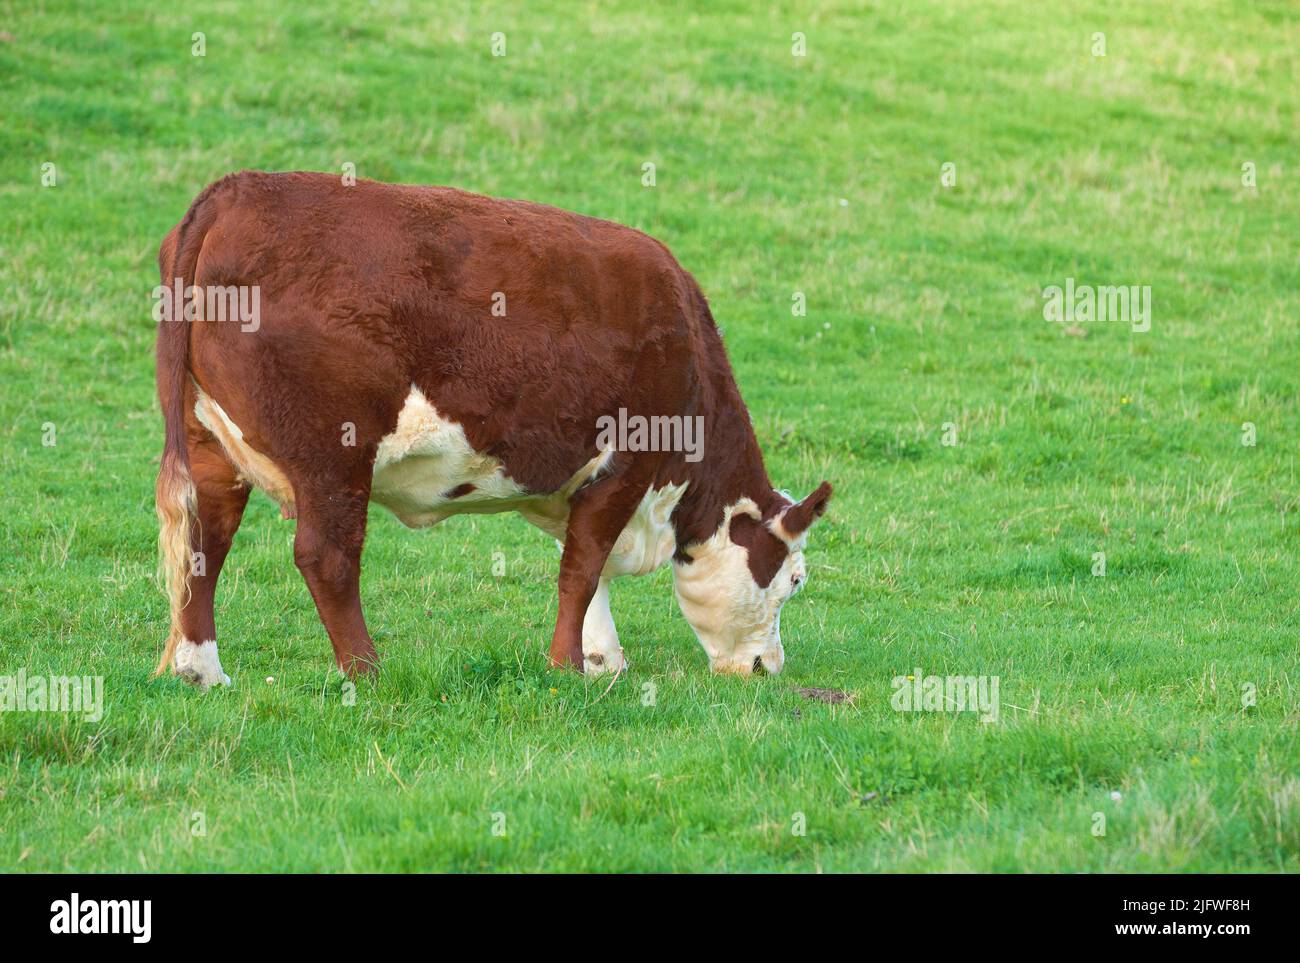 Élevage d'animaux bovins pour l'élevage de bovins dans un pré pour produire du lait ou du bœuf. Bétail broutant pour la nourriture sur des terres ouvertes dans la nature. Copier l'espace avec la vache Banque D'Images